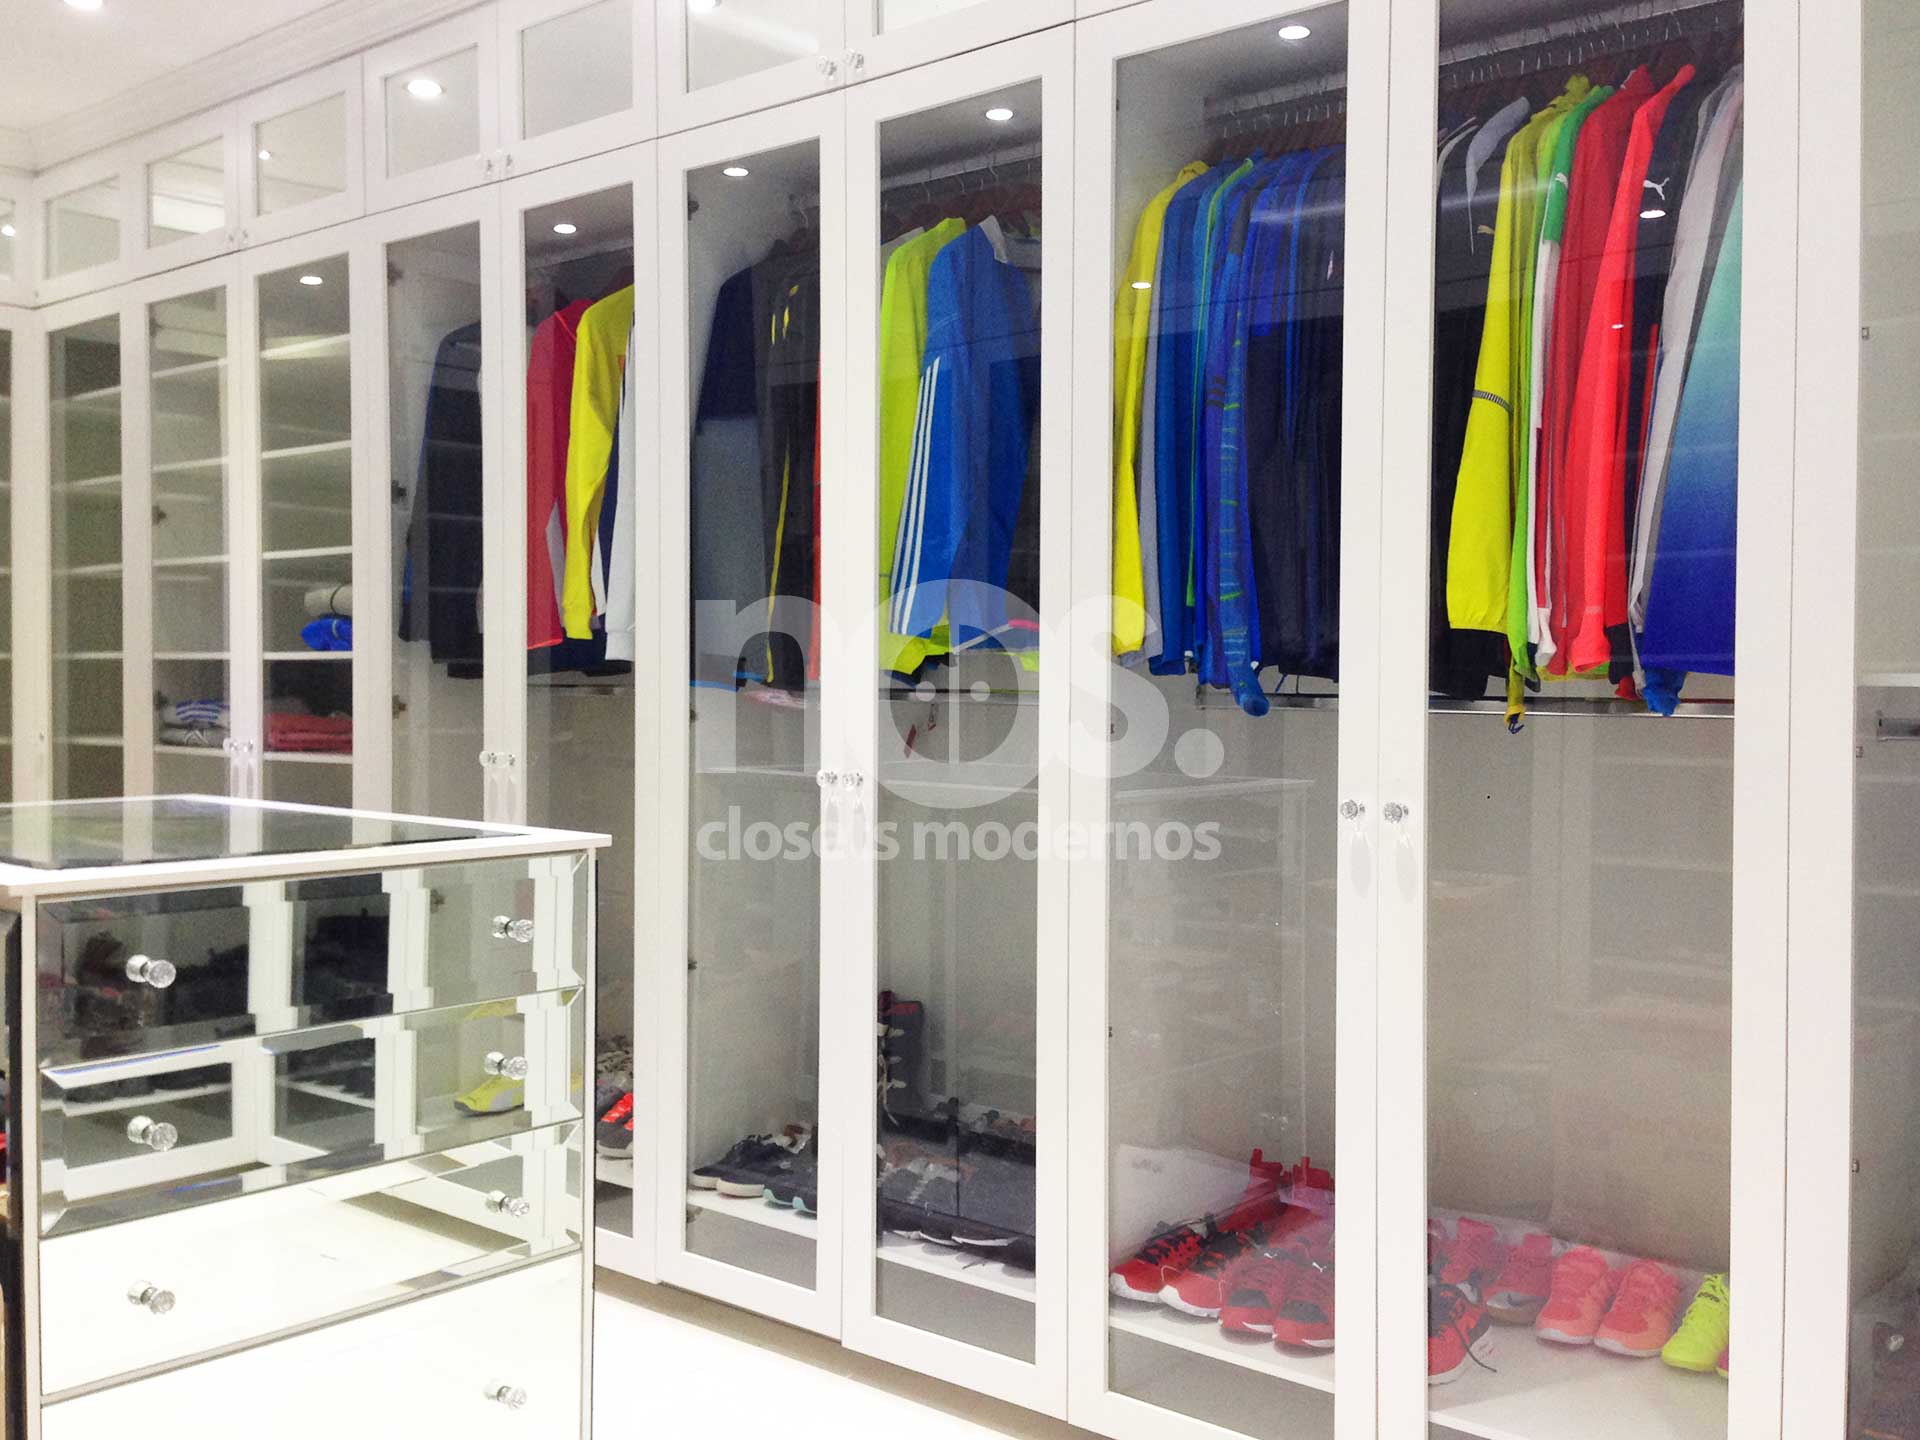 Fábrica de closets modernos, vestidores y organizadores de zapatos en CDMX y Querétaro.